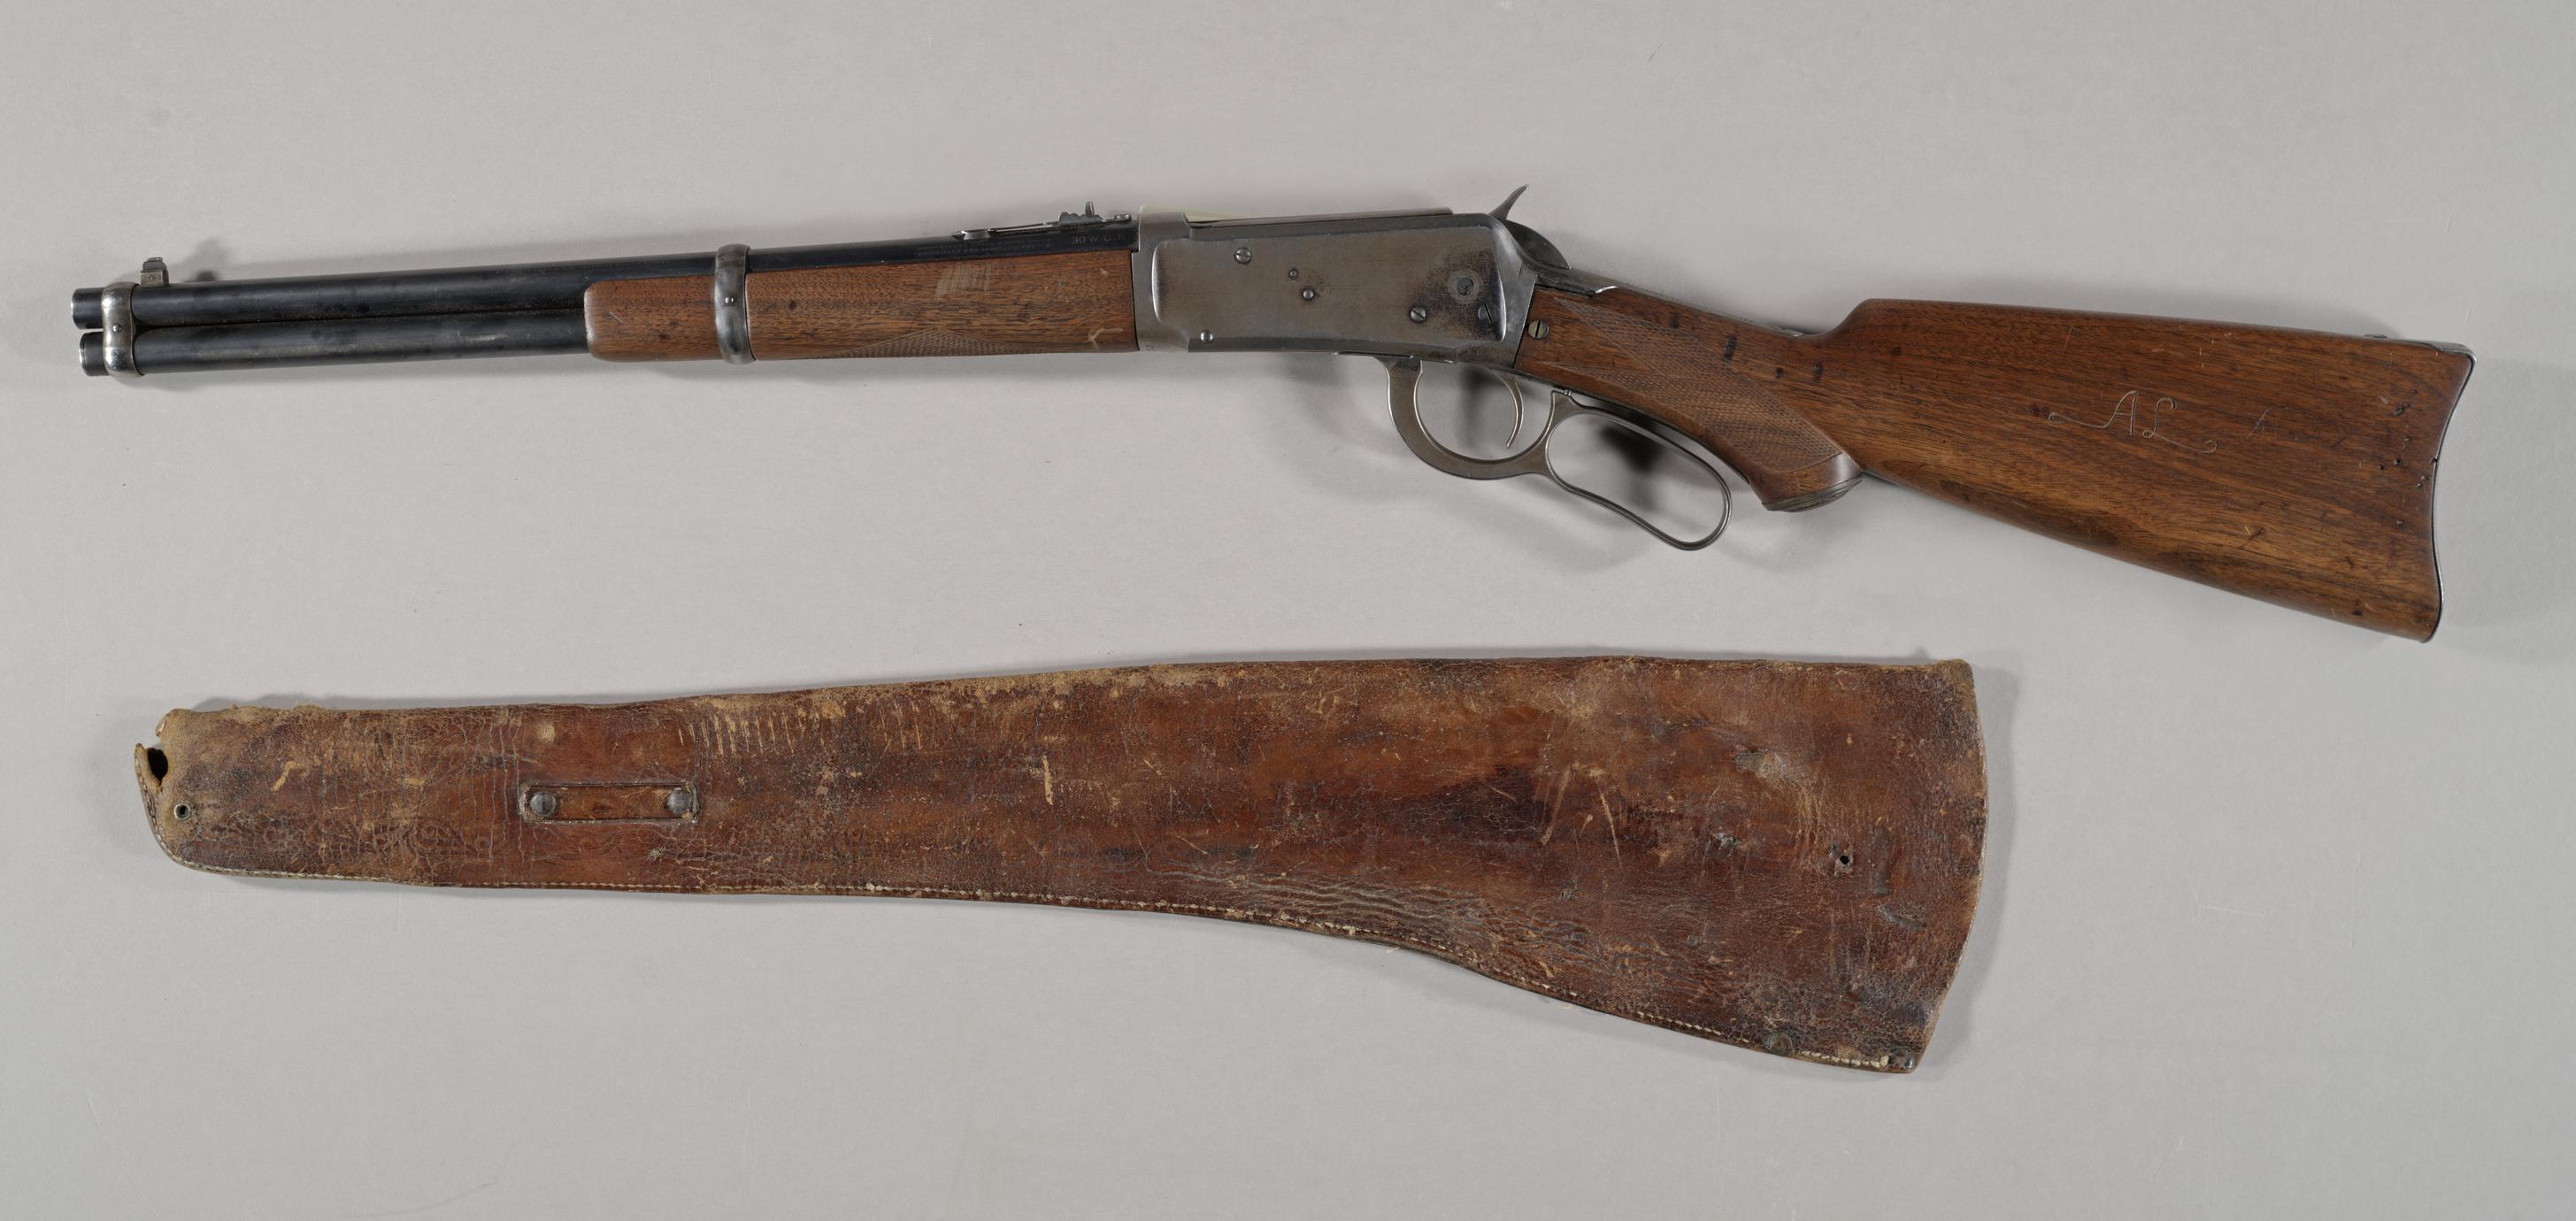 Aldo Leopold's Winchester rifle